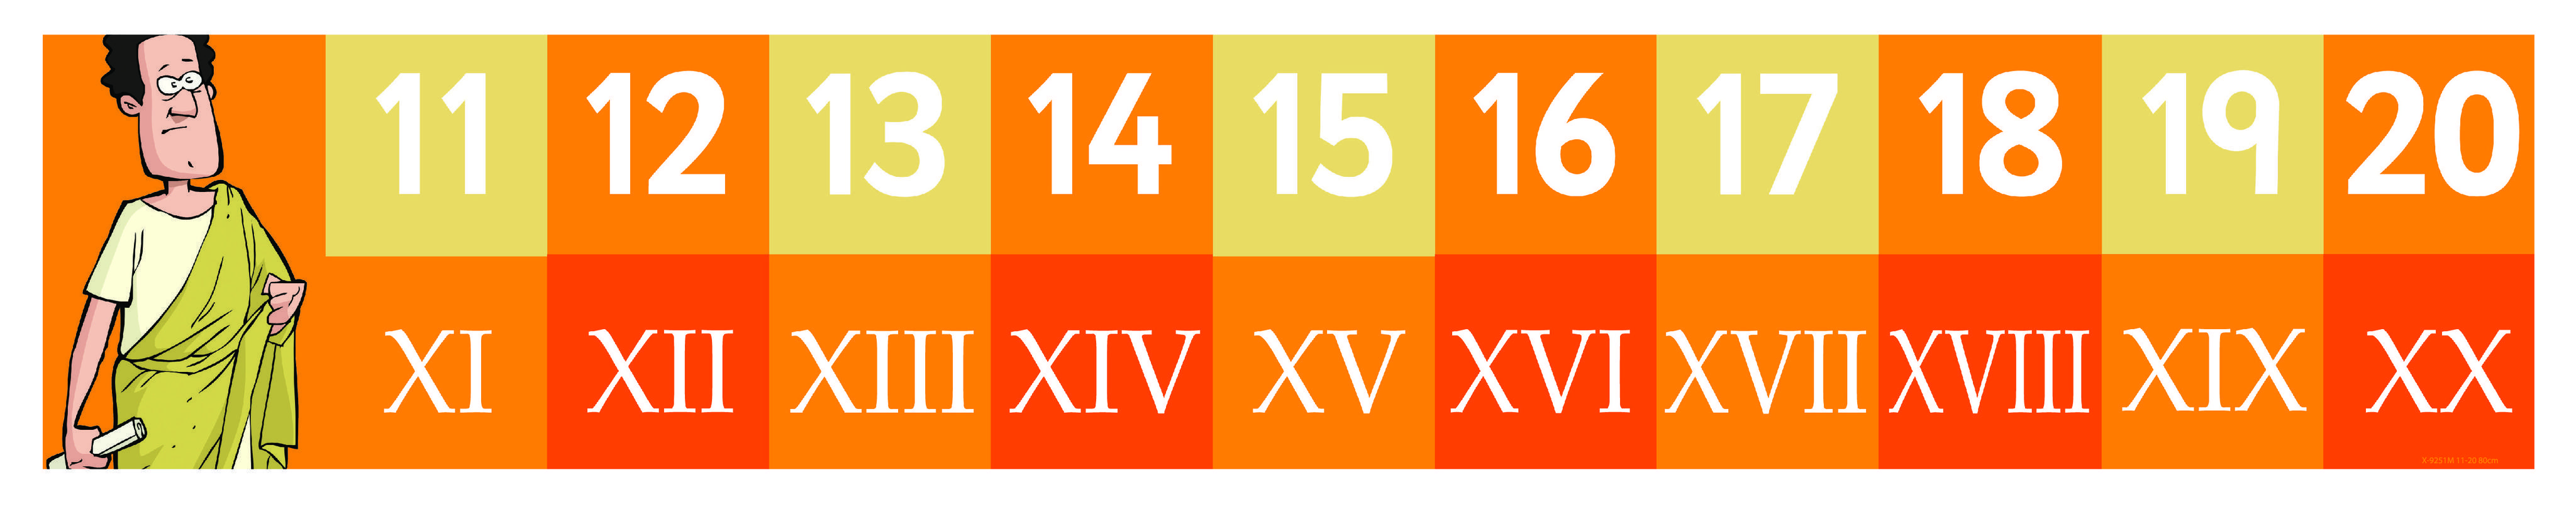 roman-numerals-11-to-20